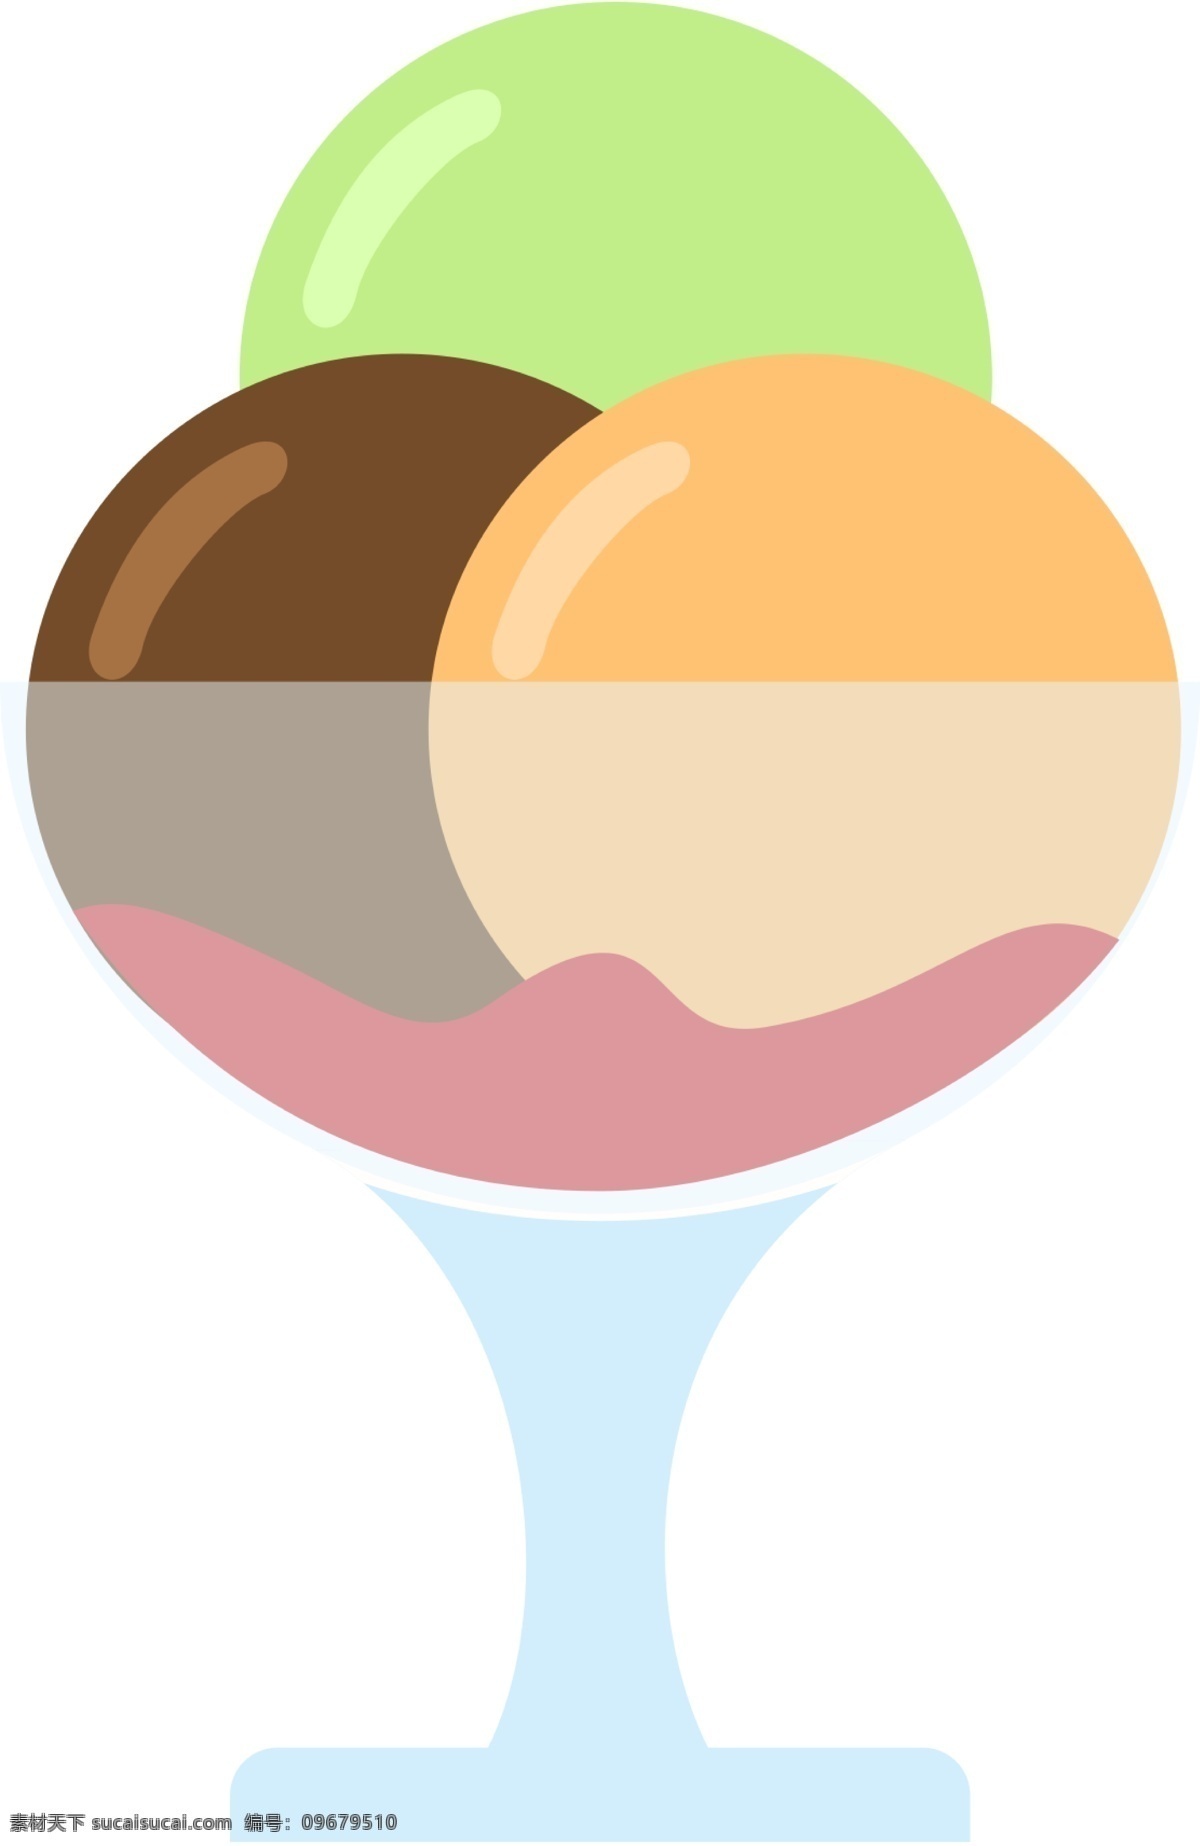 雪糕 icon 图标 填充 线性 扁平 手绘 单色 多色 简约 精美 可爱 商务 圆润 方正 立体 冰淇凌